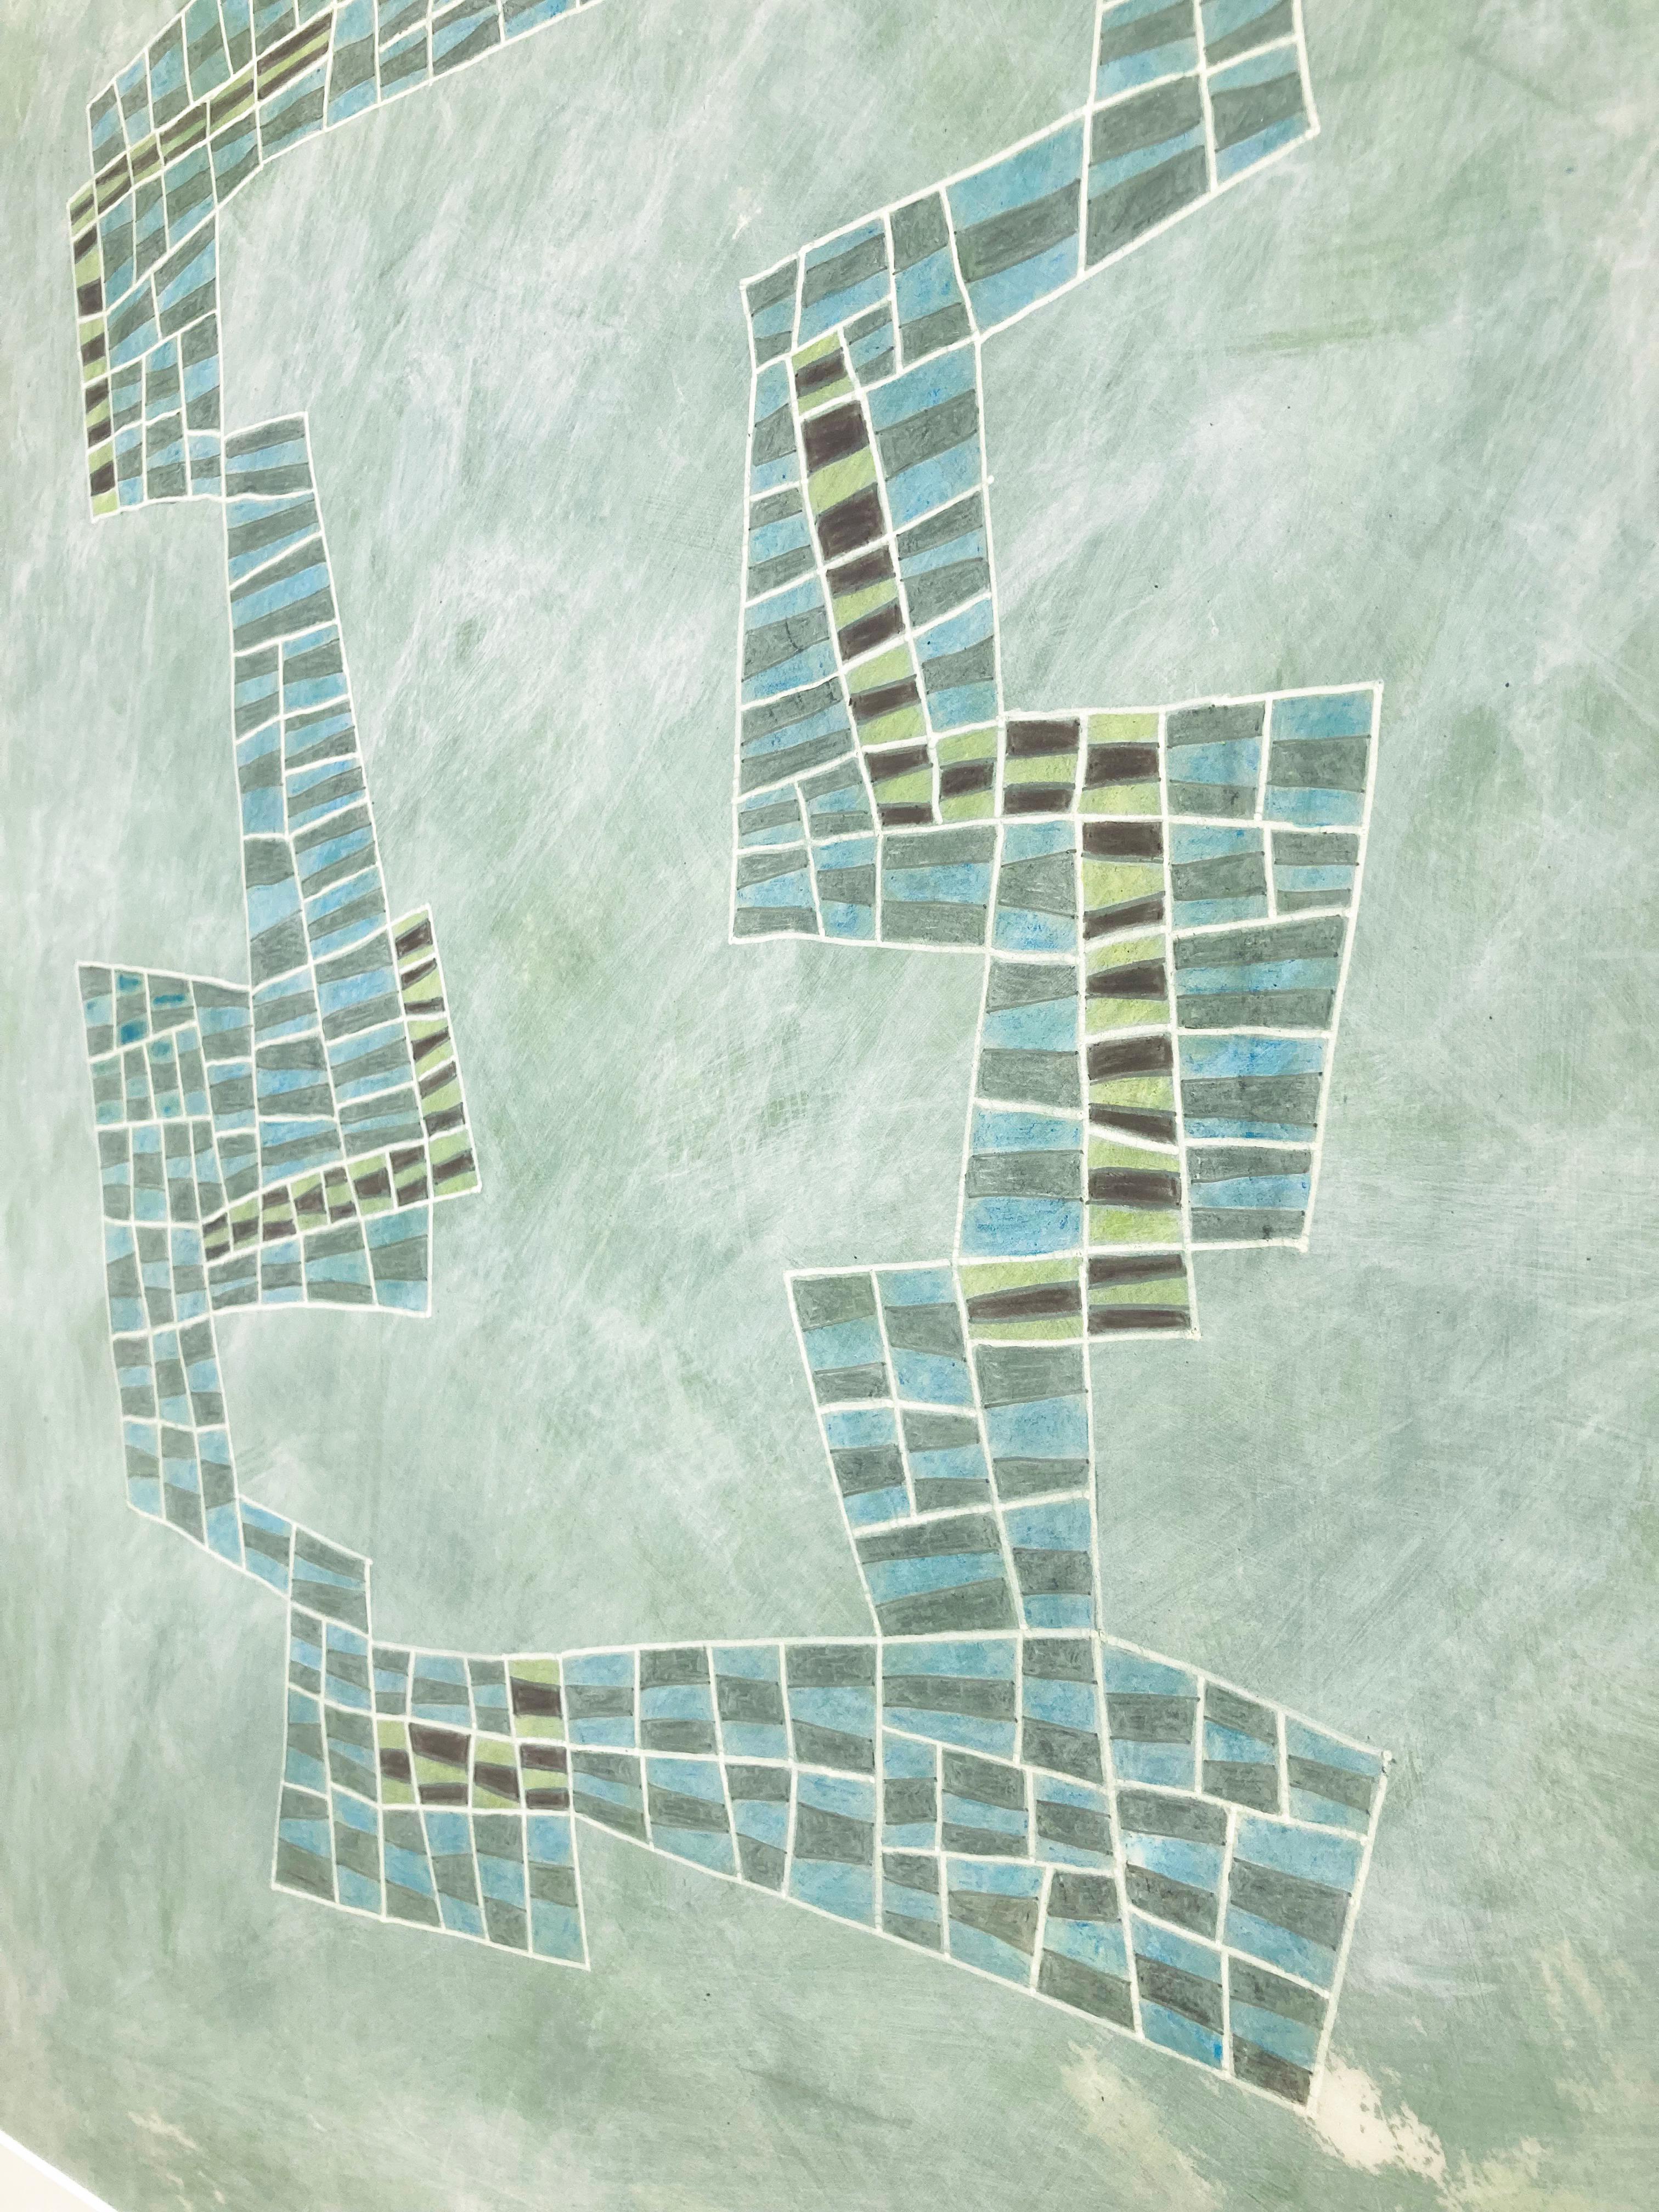 Abstraktes geometrisches Gemälde mit einer kühlen Farbpalette von Grün, Blau und Grau mit Akzenten von Schwarz und Weiß vor einem meerschaumgrünen, mit Acrylfarbe gewaschenen Hintergrund
